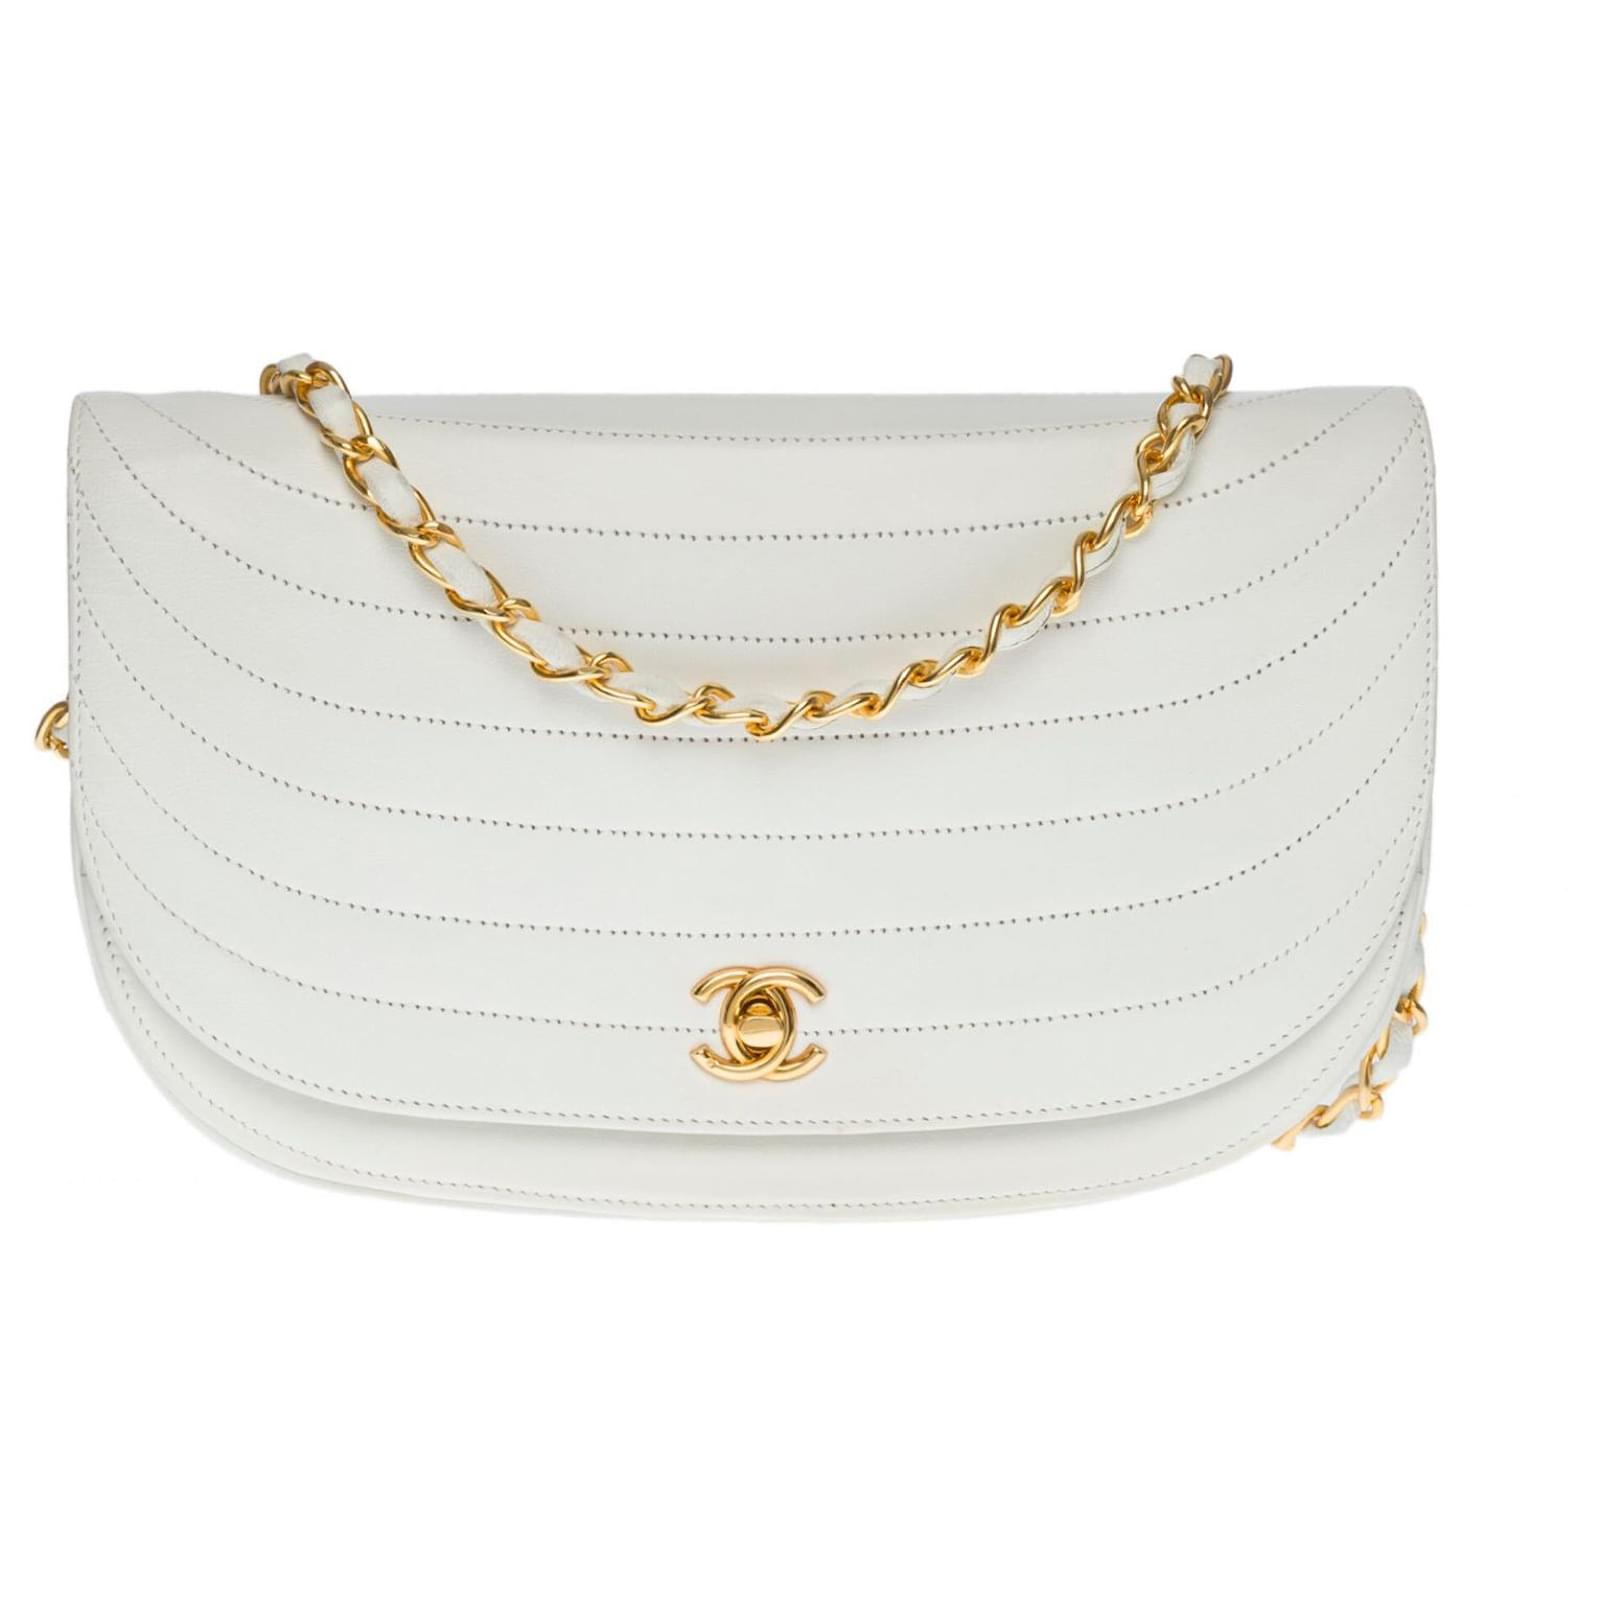 Timeless Lovely Chanel Classique demi-lune handbag in white